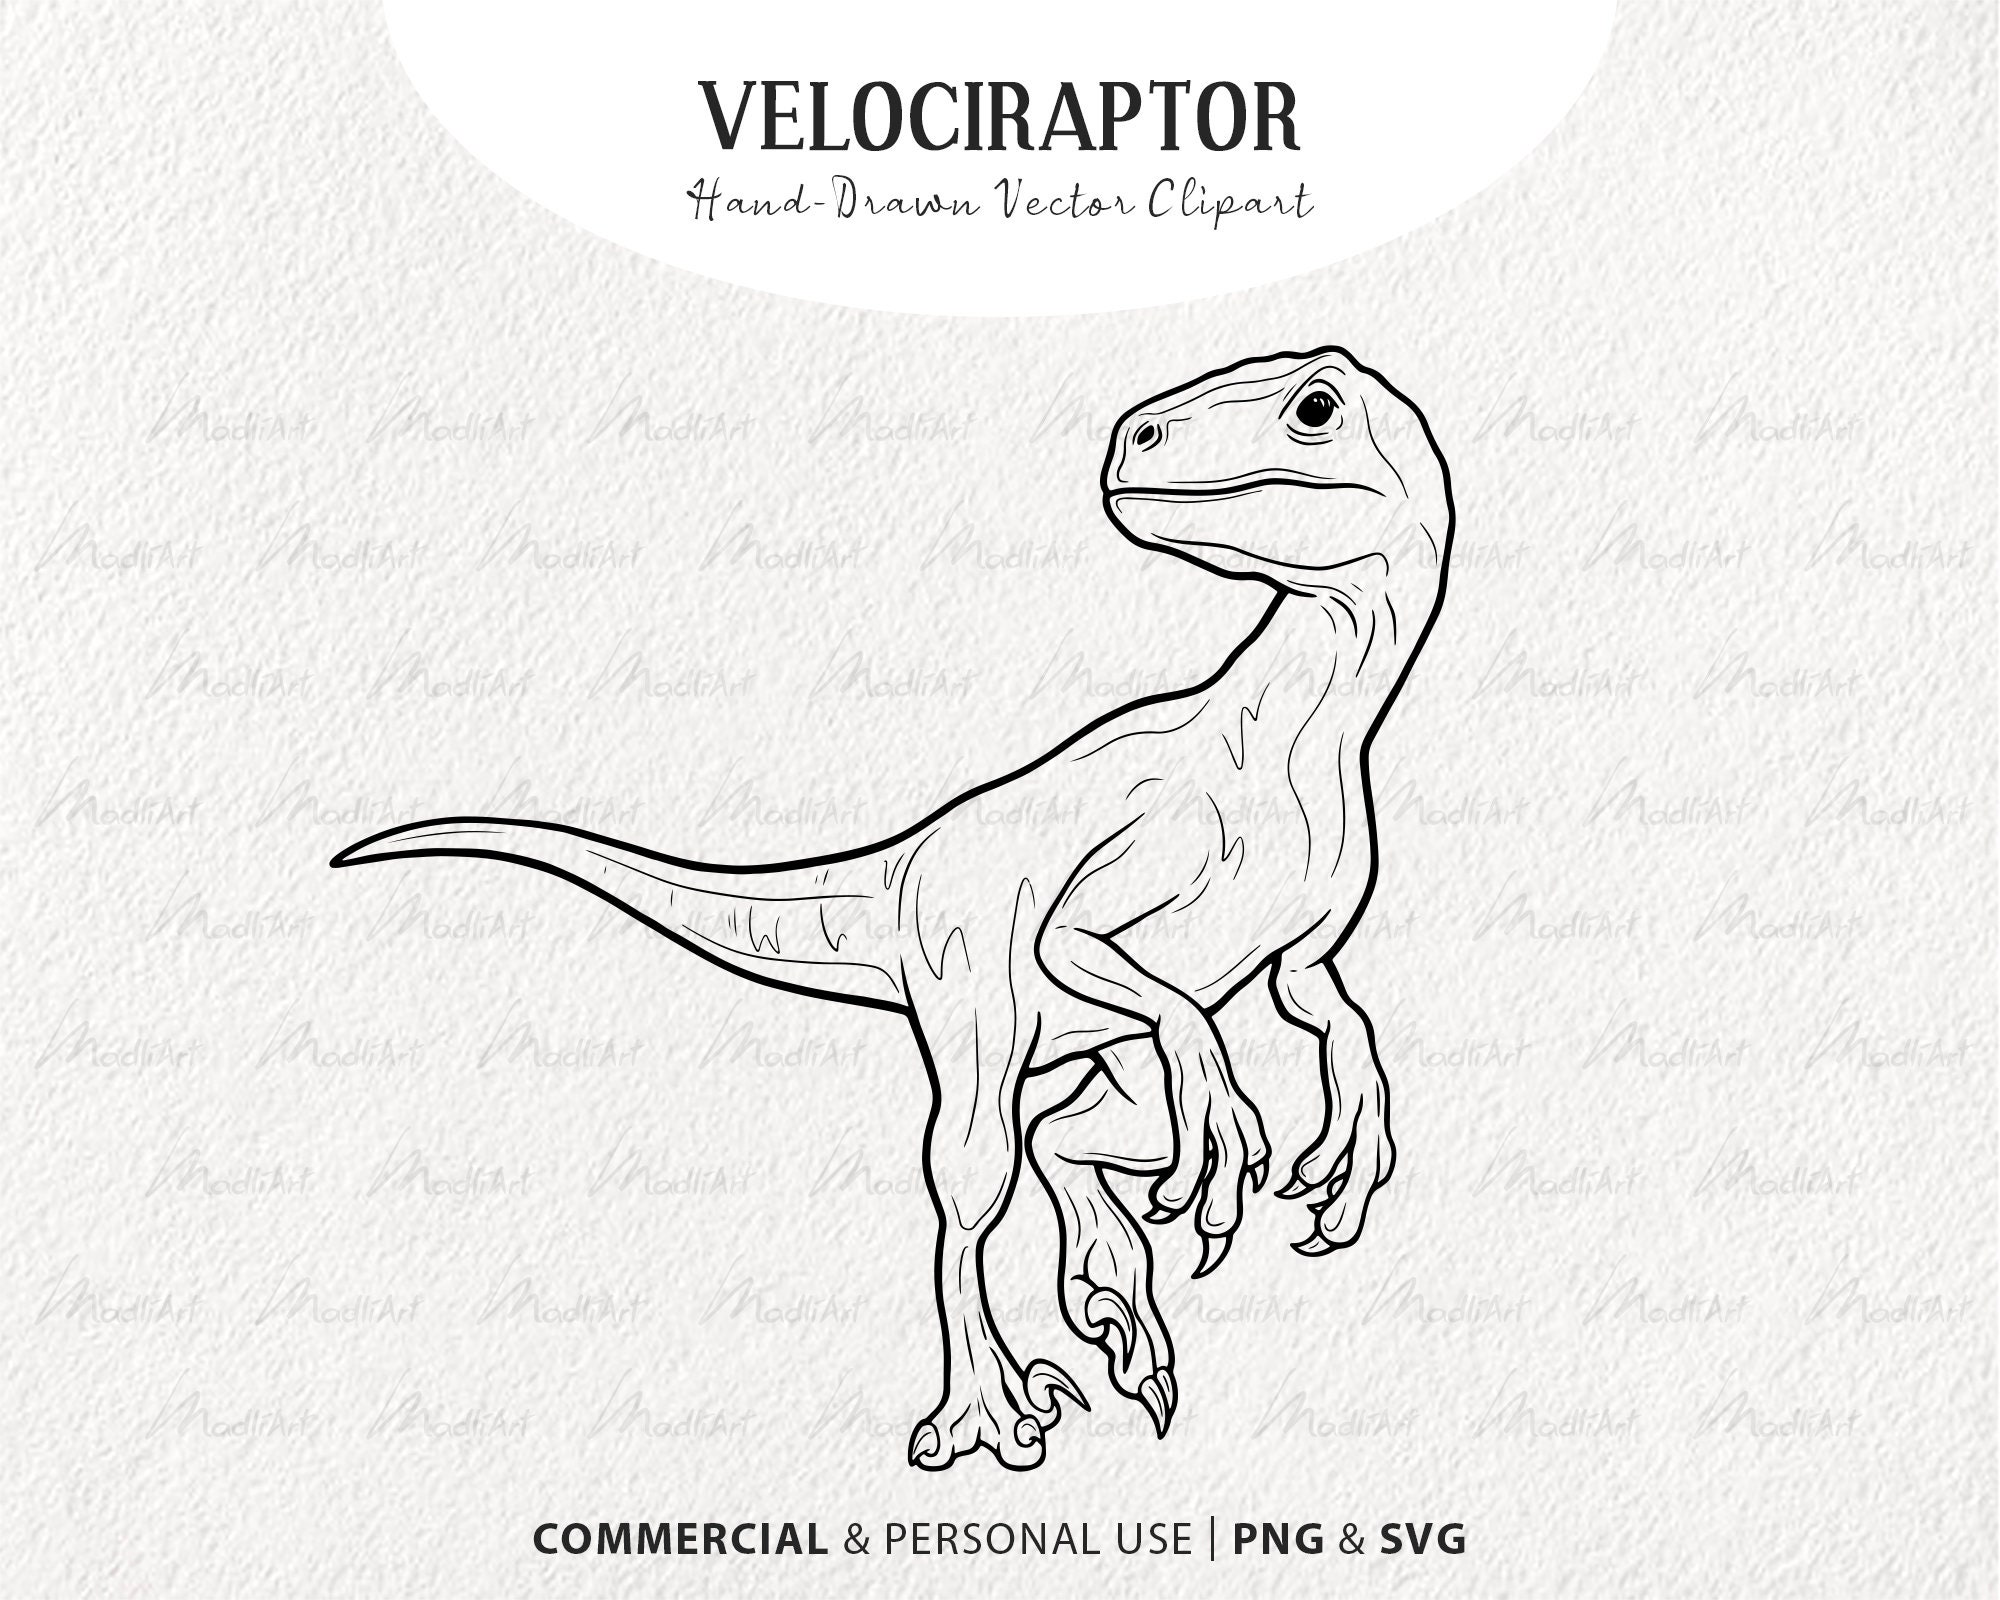 Velociraptor dinosaur vector clipart hand